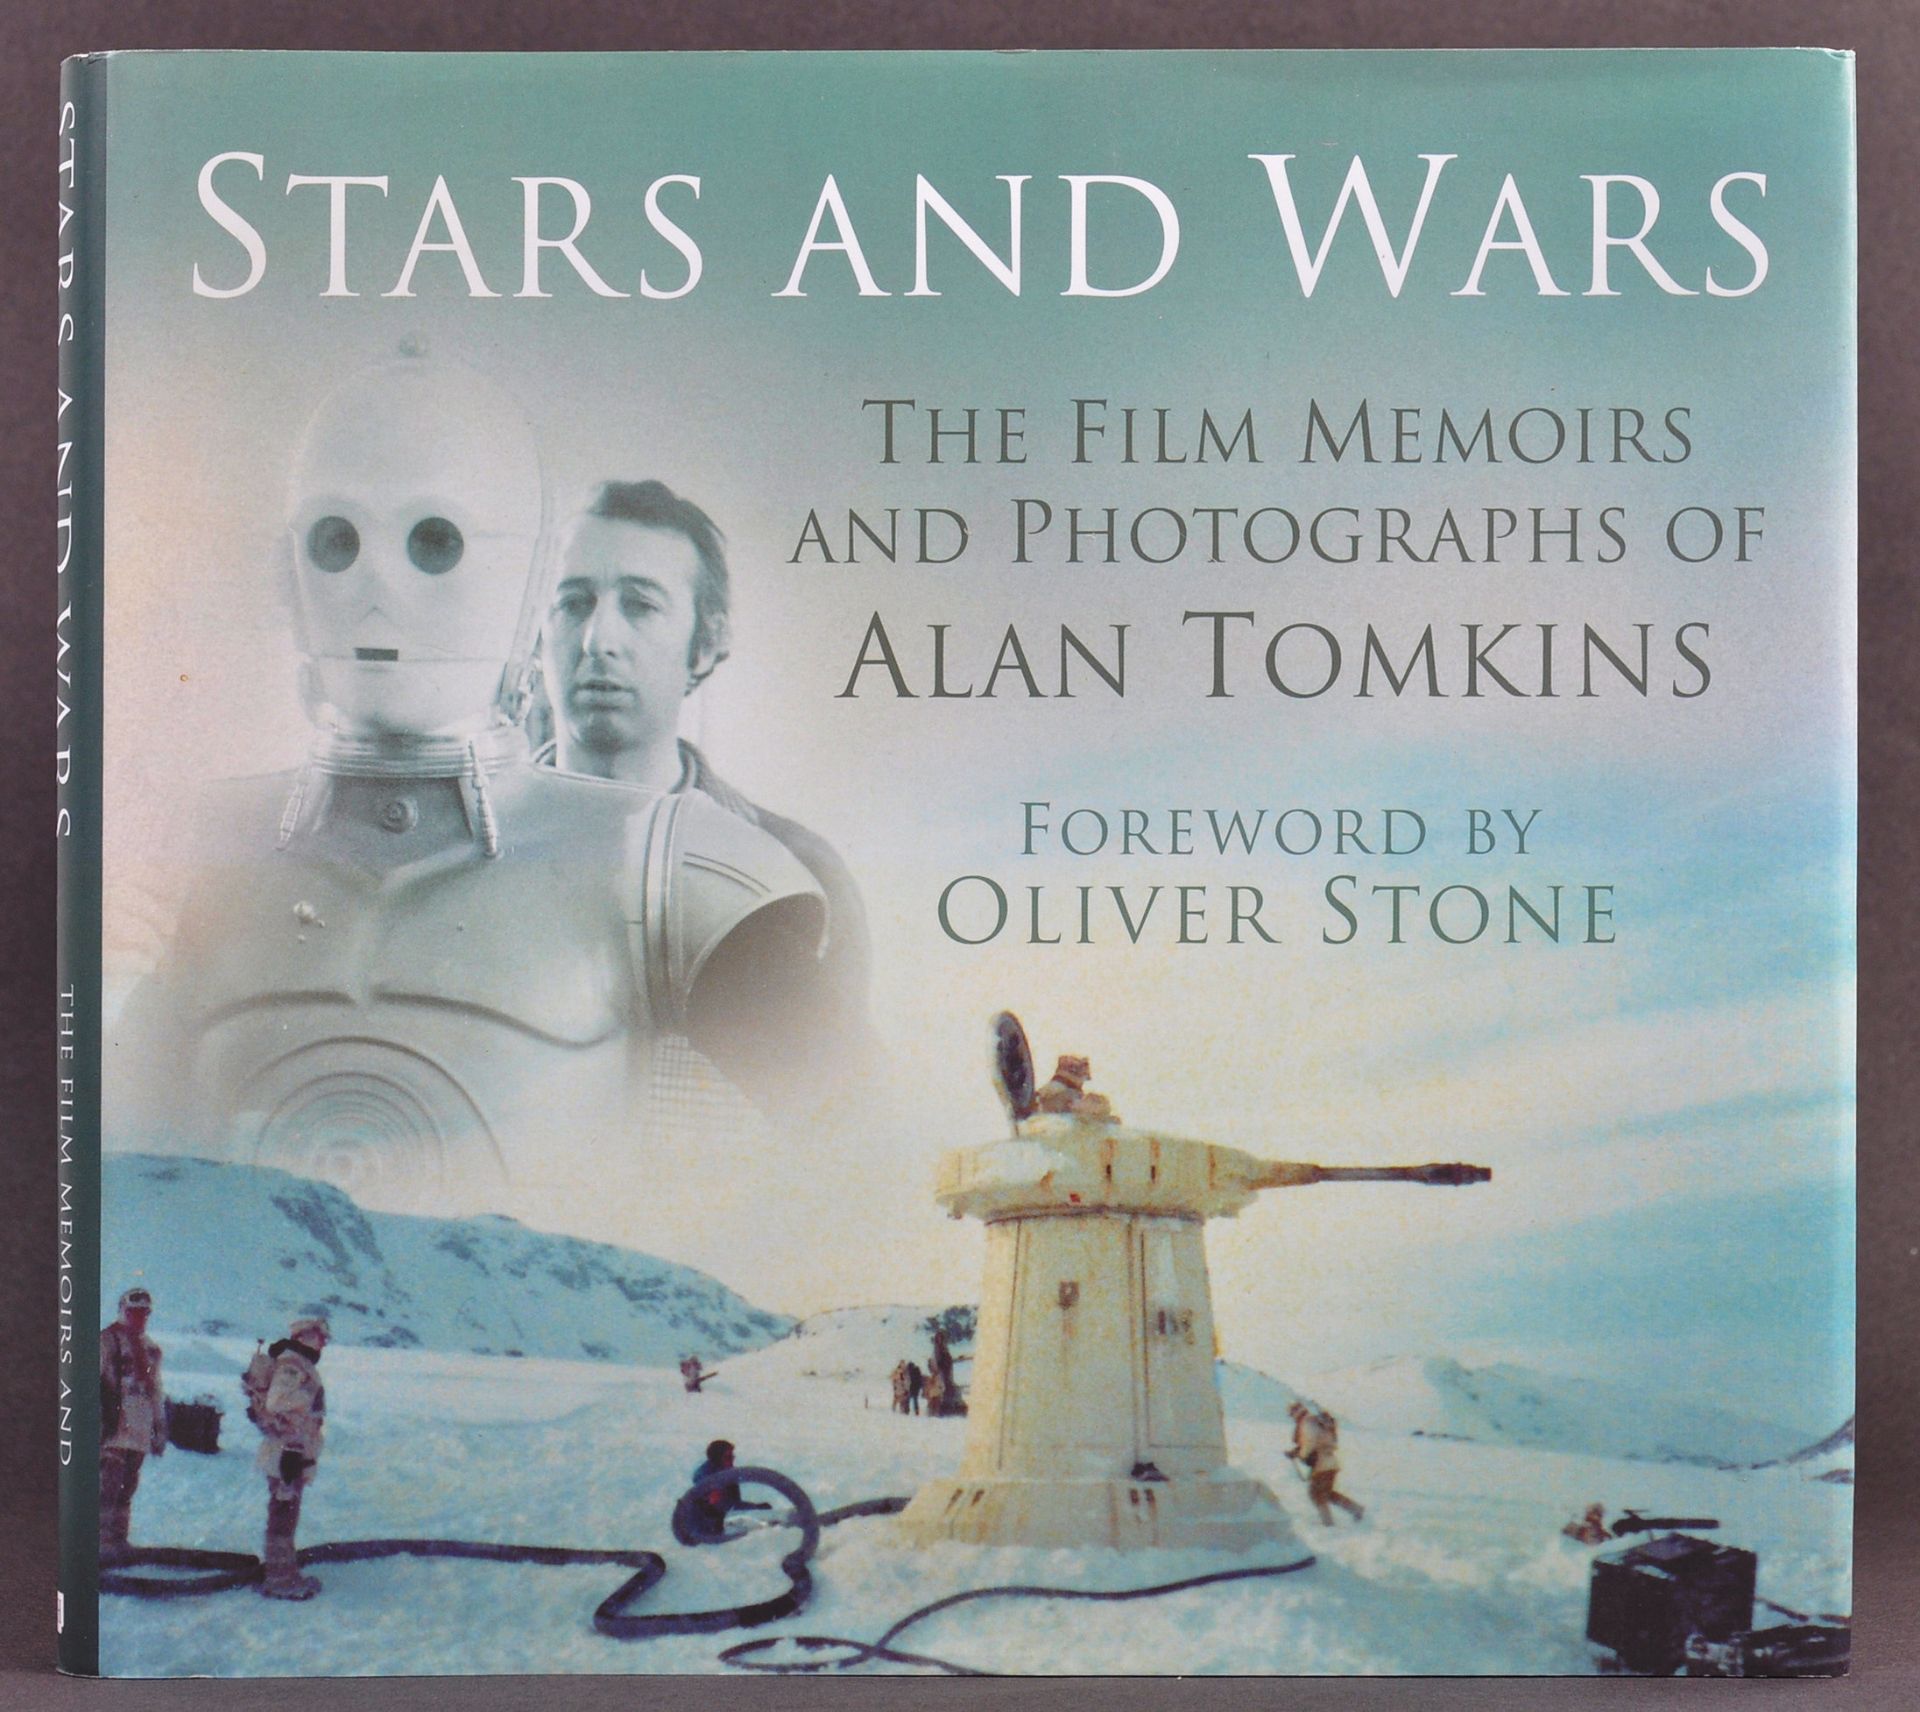 ESTATE OF DAVE PROWSE - ALAN TOMKINS - STAR WARS SIGNED BOOK